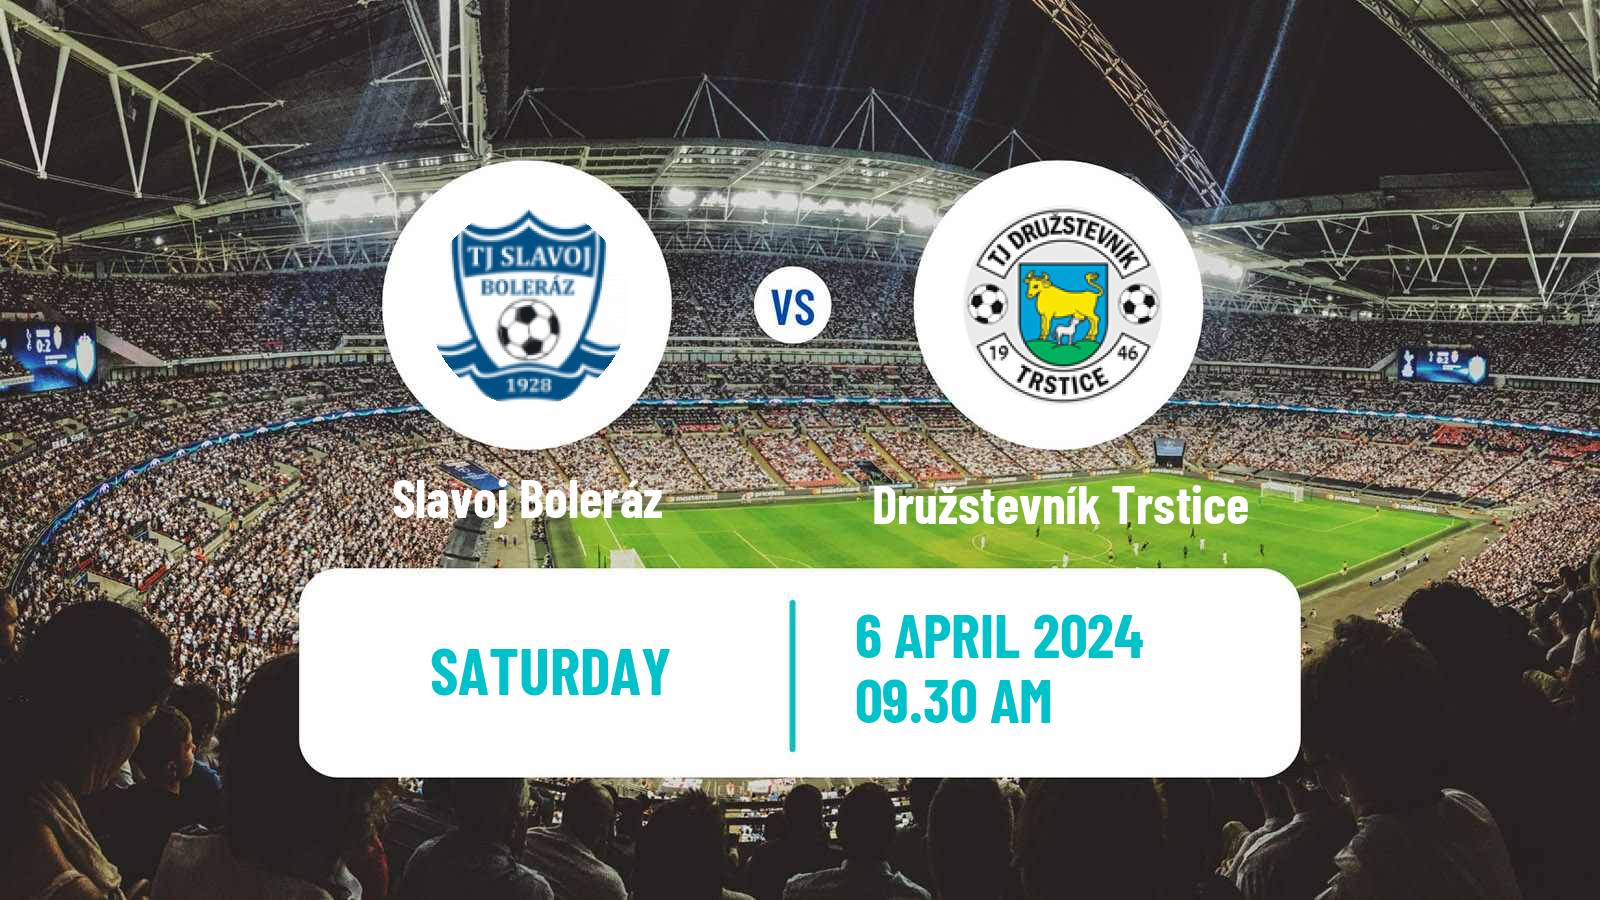 Soccer Slovak 4 Liga West Slavoj Boleráz - Družstevník Trstice